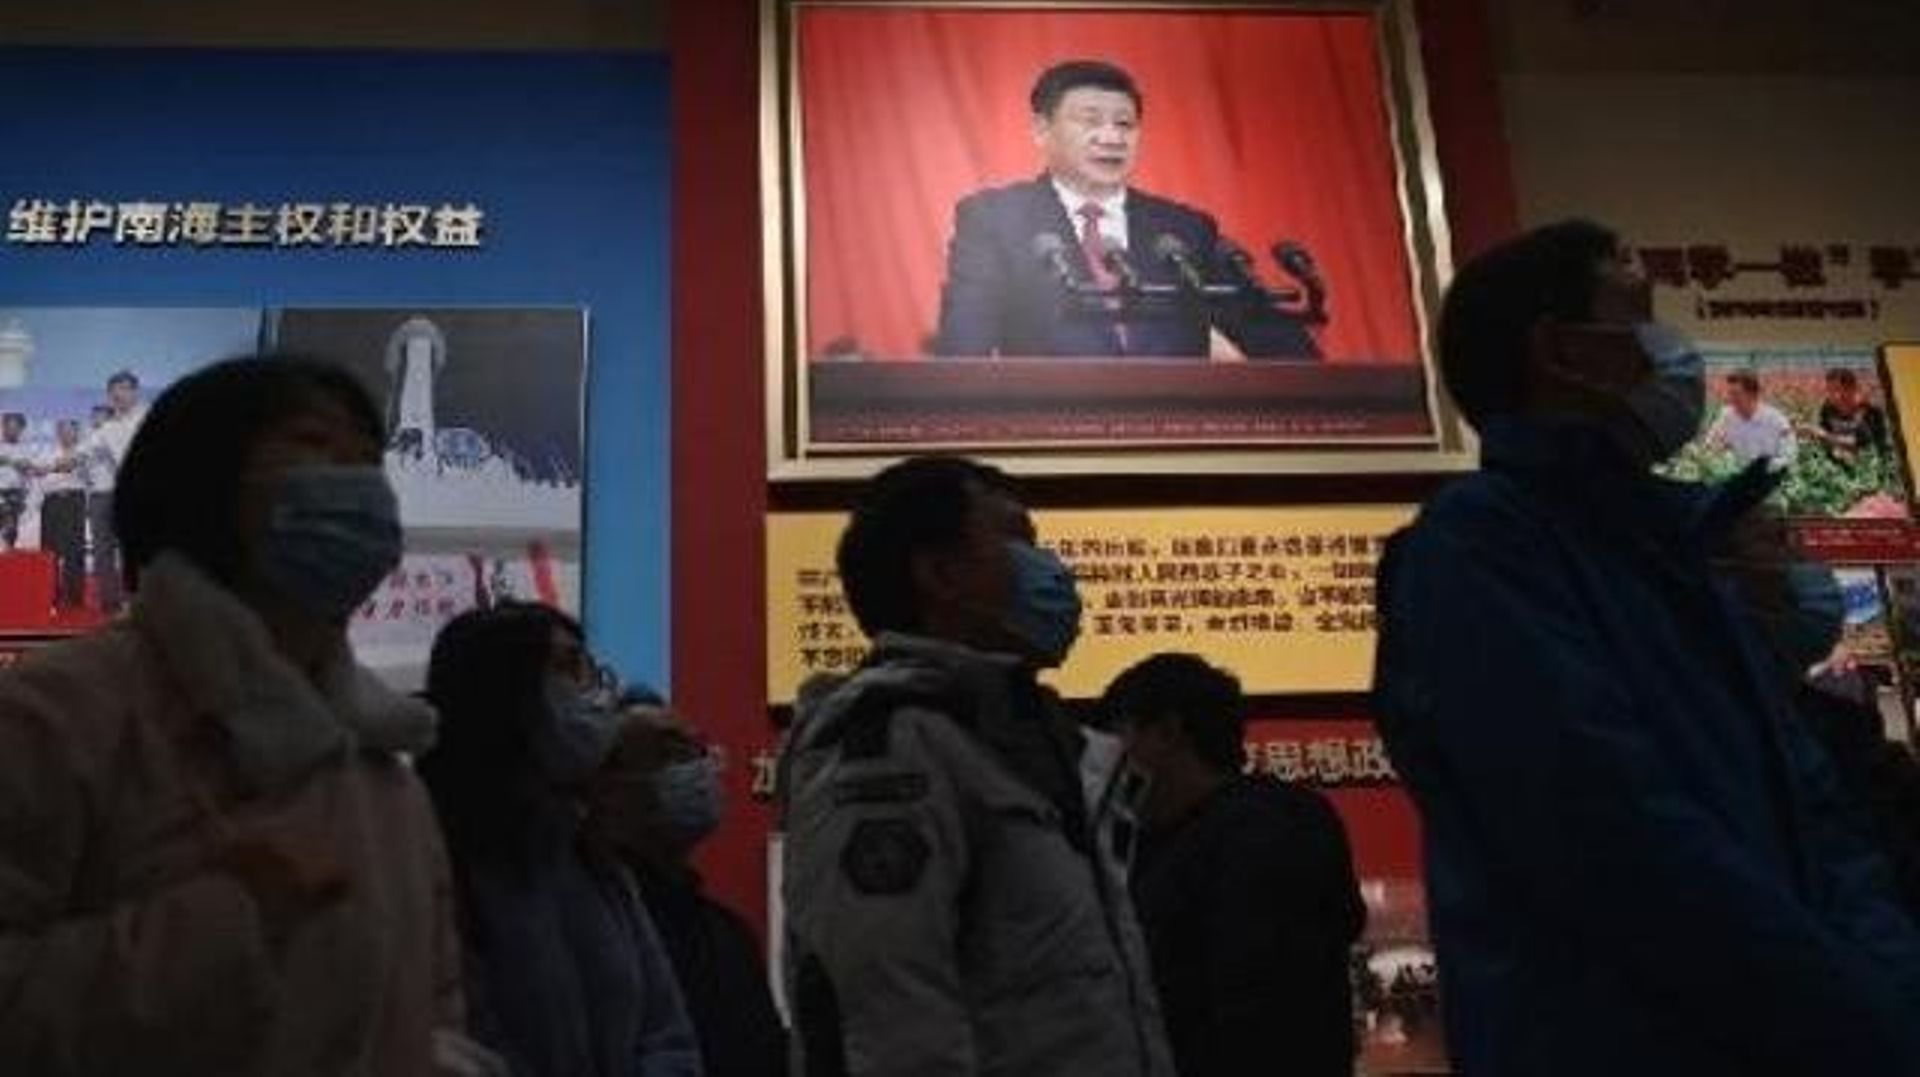 Xi Jinping renforce son assise en s'appuyant sur l'histoire